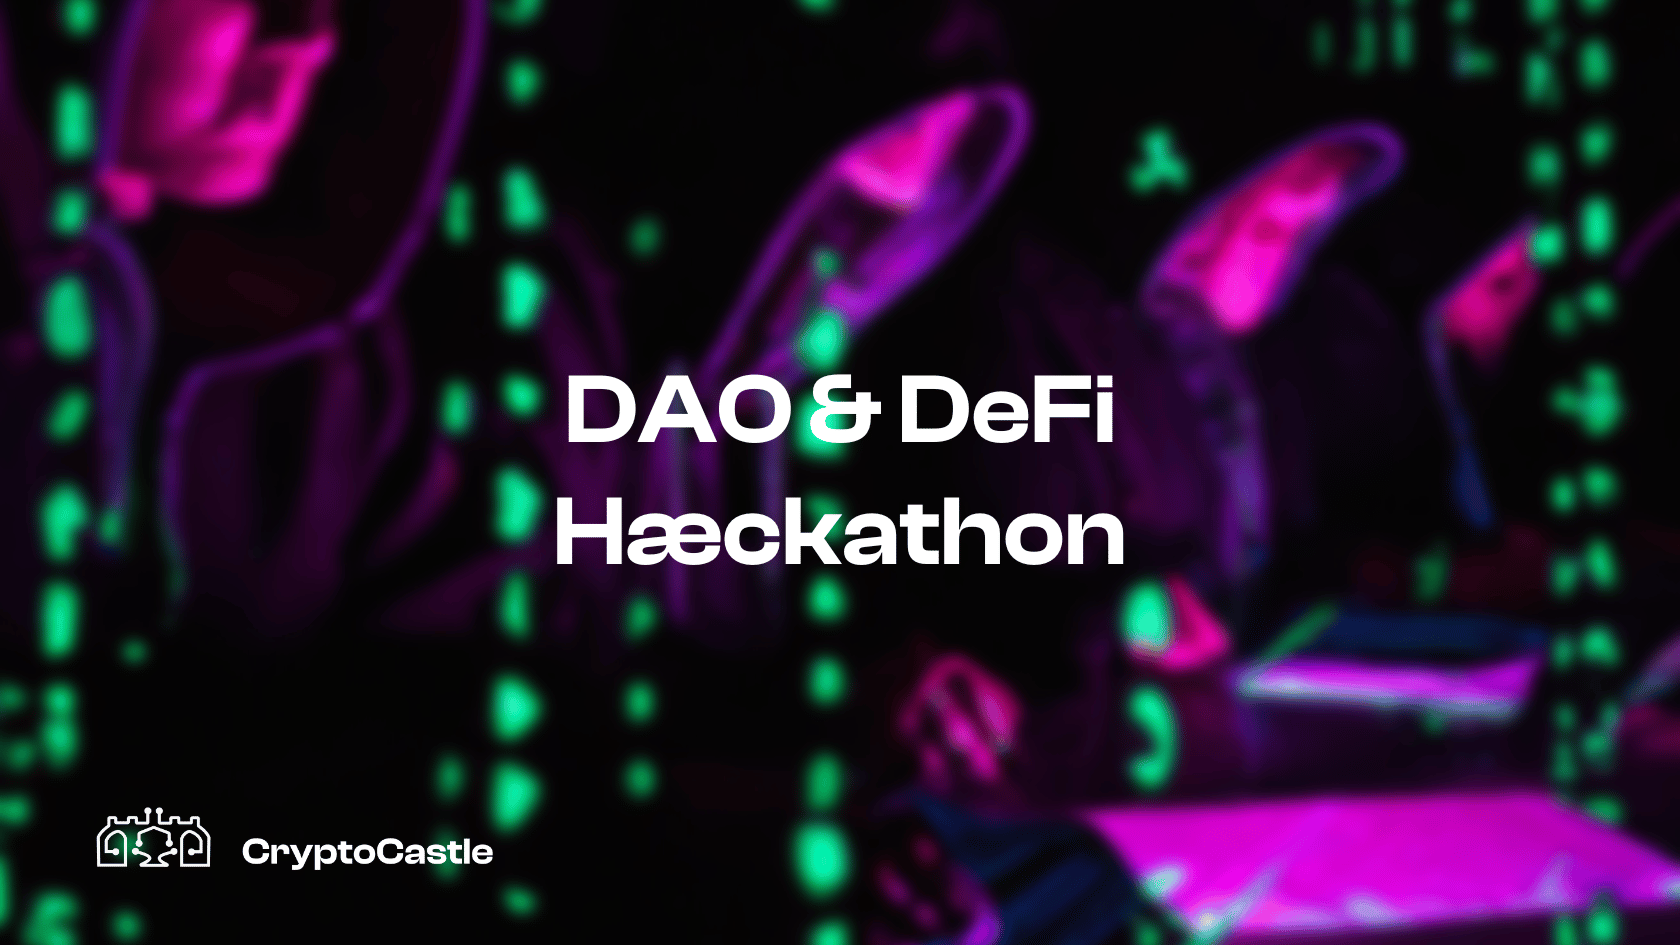 The DAO & DeFi Hæckathon